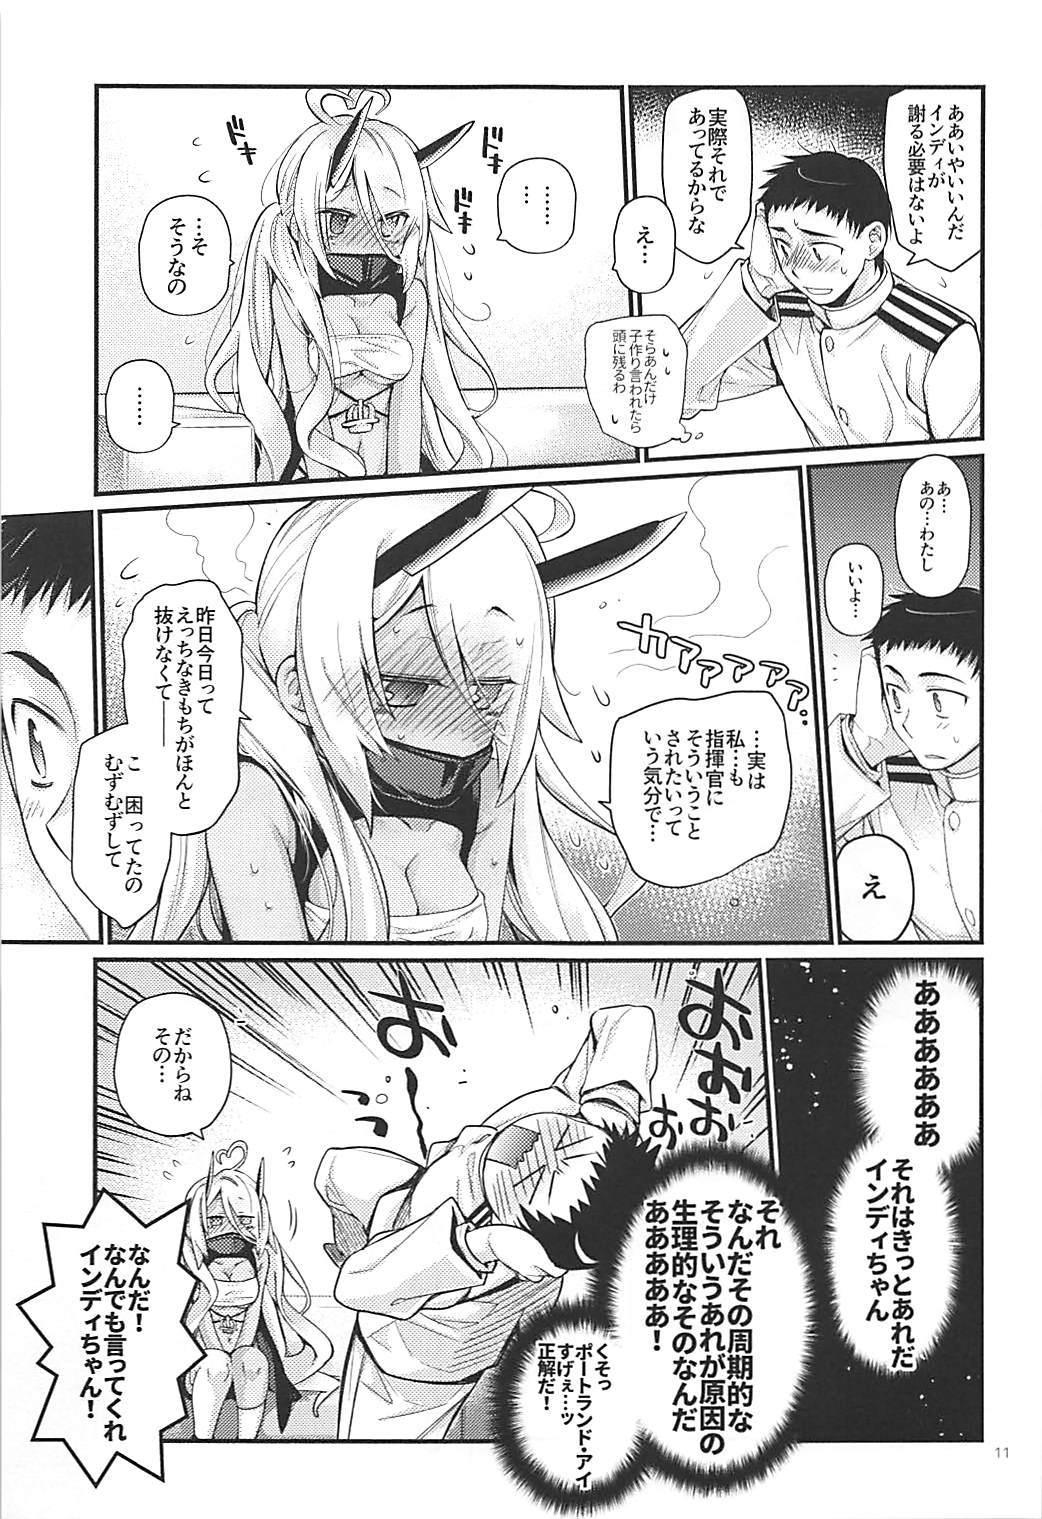 Ball Licking Uchi no Imouto wa Sekaiichi Kawaiin desu kedo! 2 - Azur lane Ballbusting - Page 10